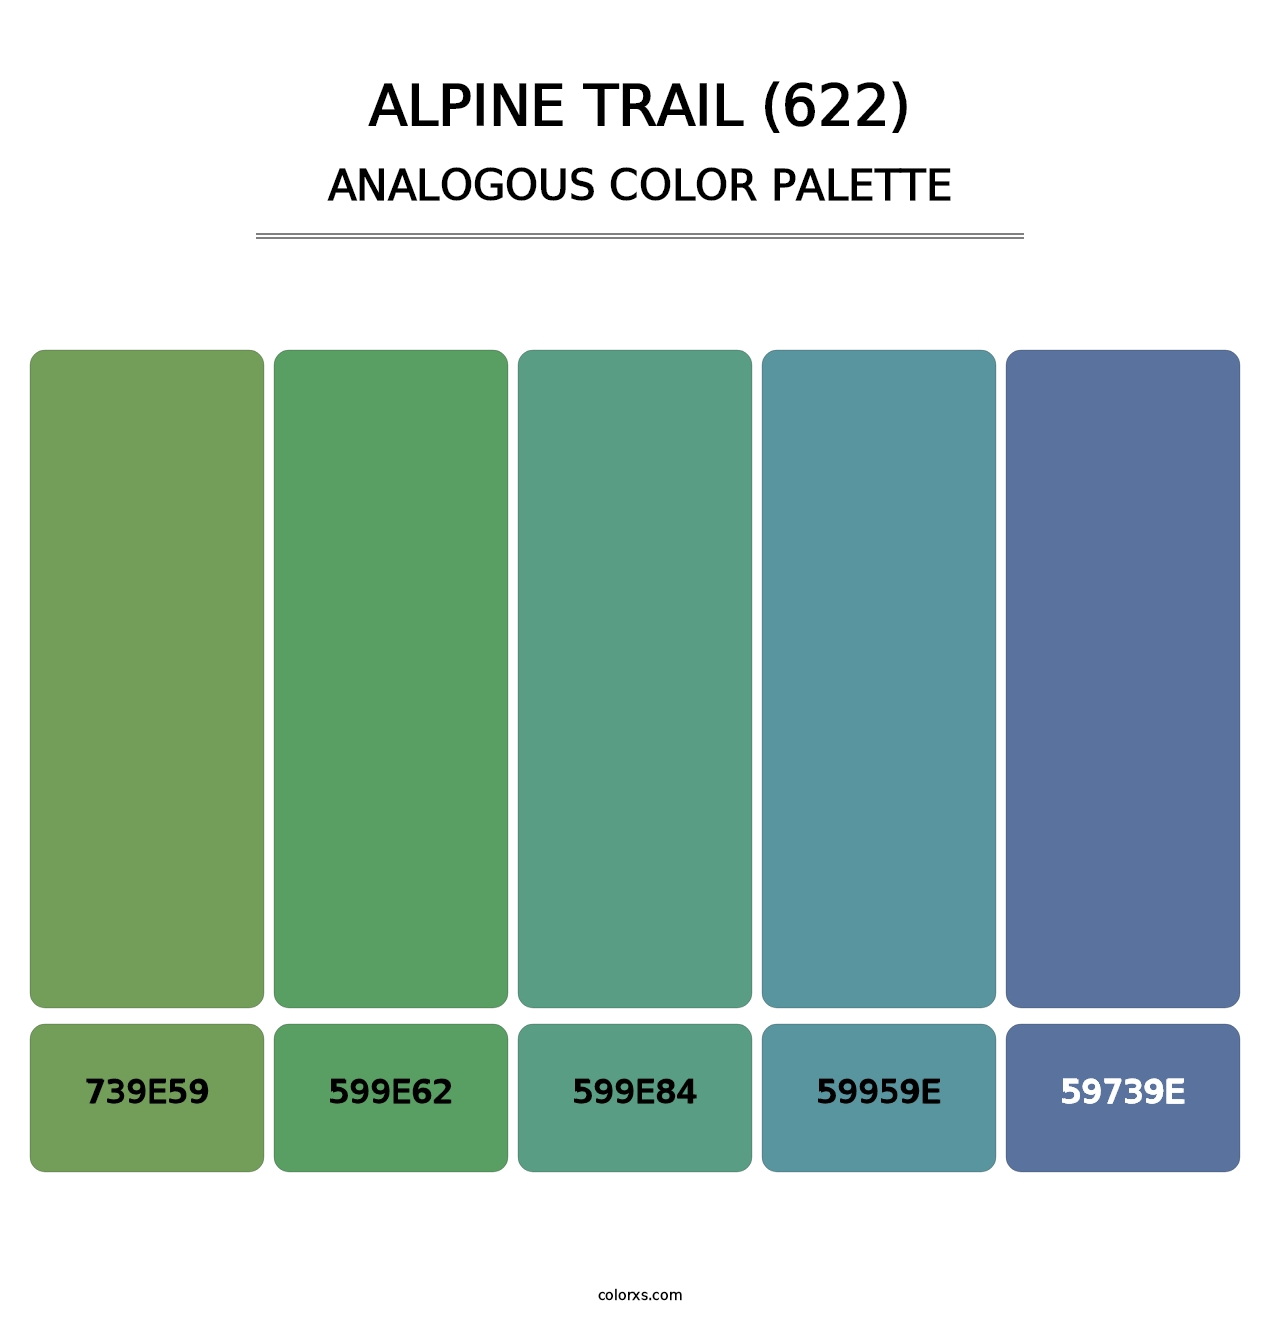 Alpine Trail (622) - Analogous Color Palette